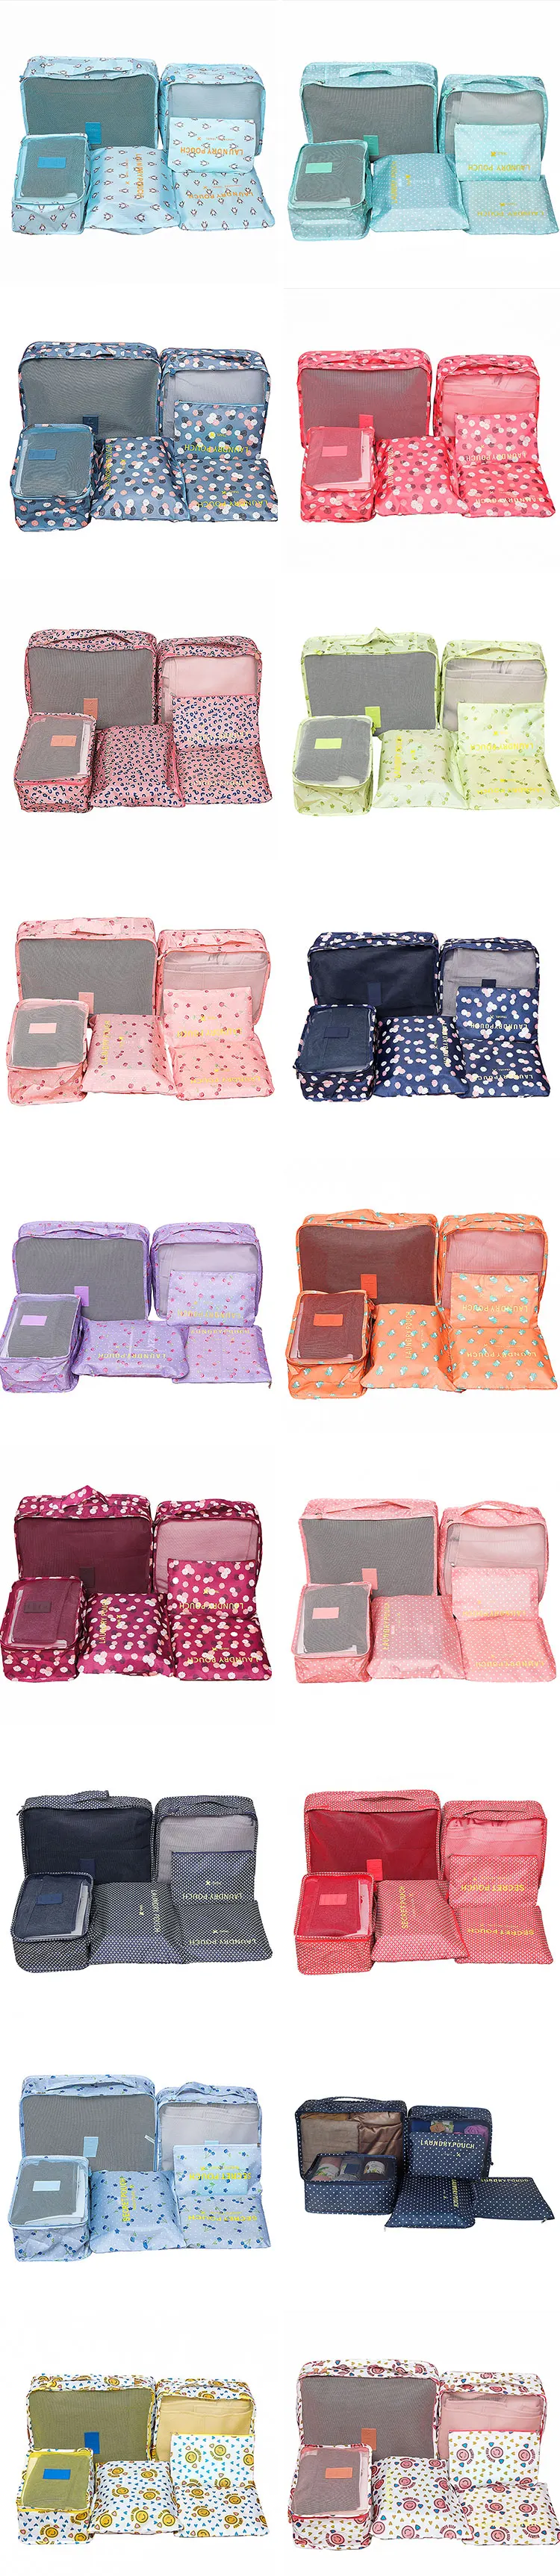 6 шт. набор дорожных сумок Портативный Упаковка Cube для женщин мужчин одежда чемодан сортировки чехол для хранения Организатор интимные